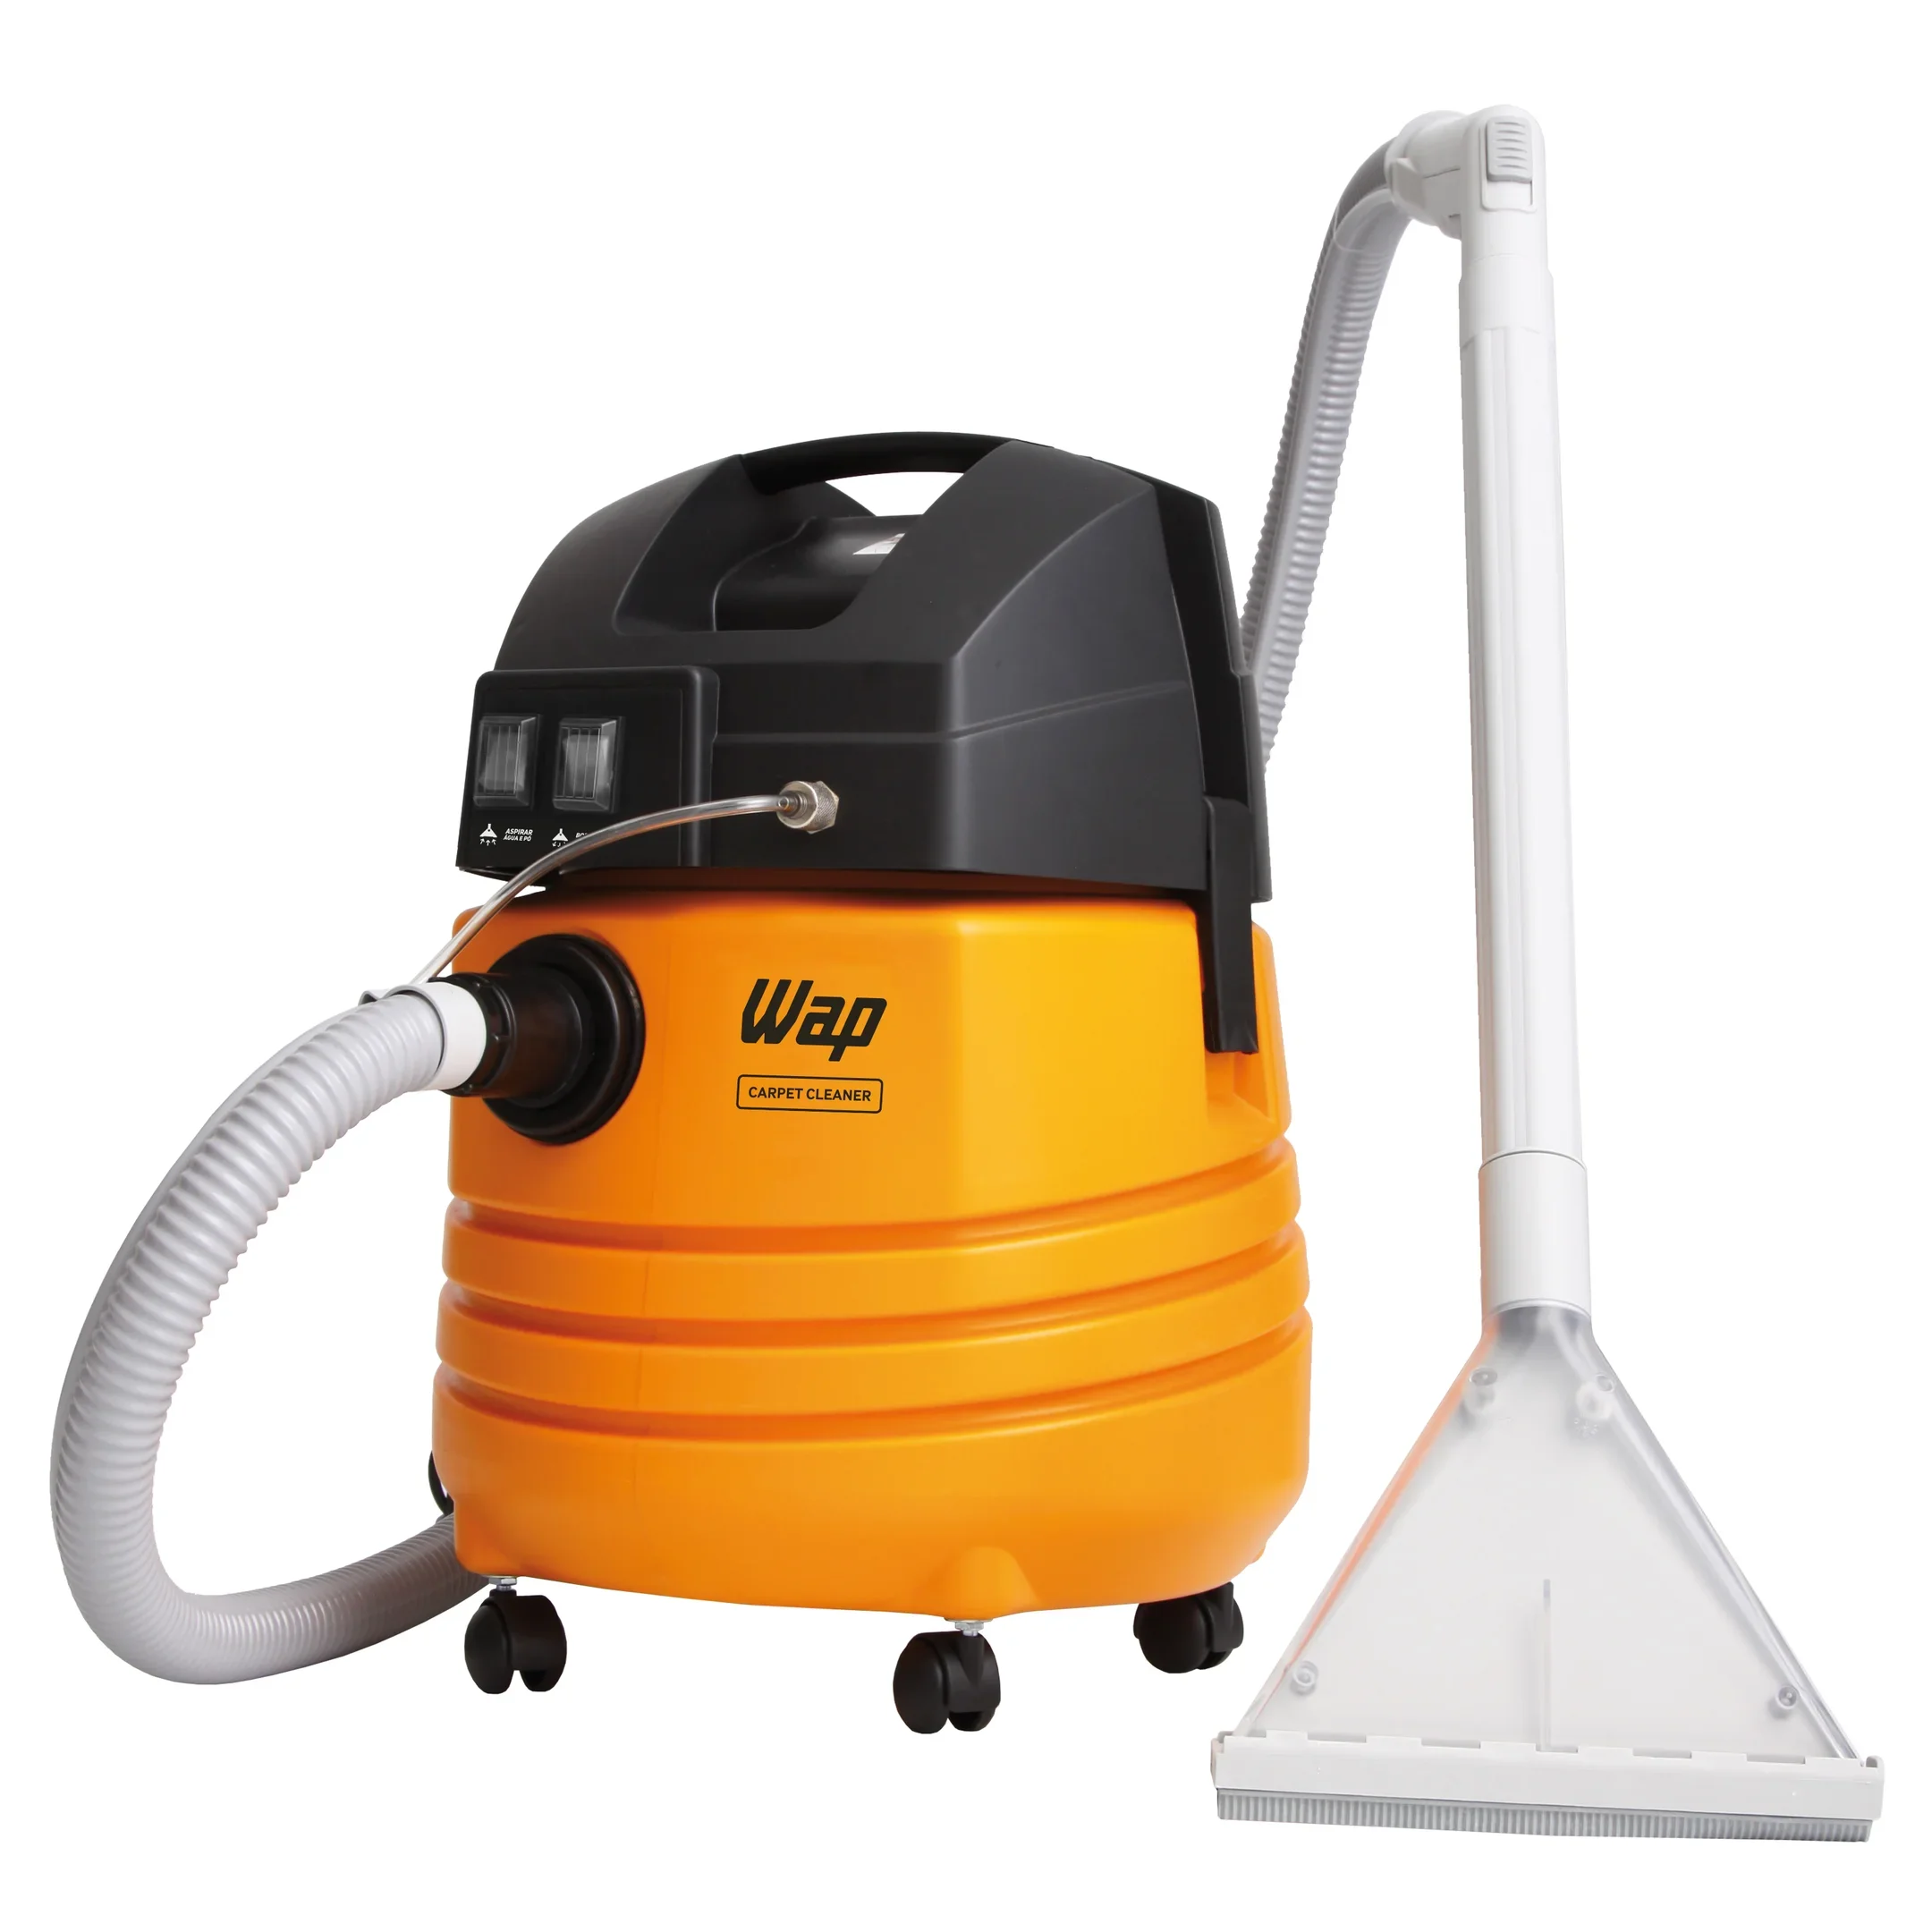 Extratora de Limpeza WAP Carpet Cleaner 1600W Uso Profissional Bocal de Sopro, Borrifa e Aspira 220V Amarelo/Preto - 3